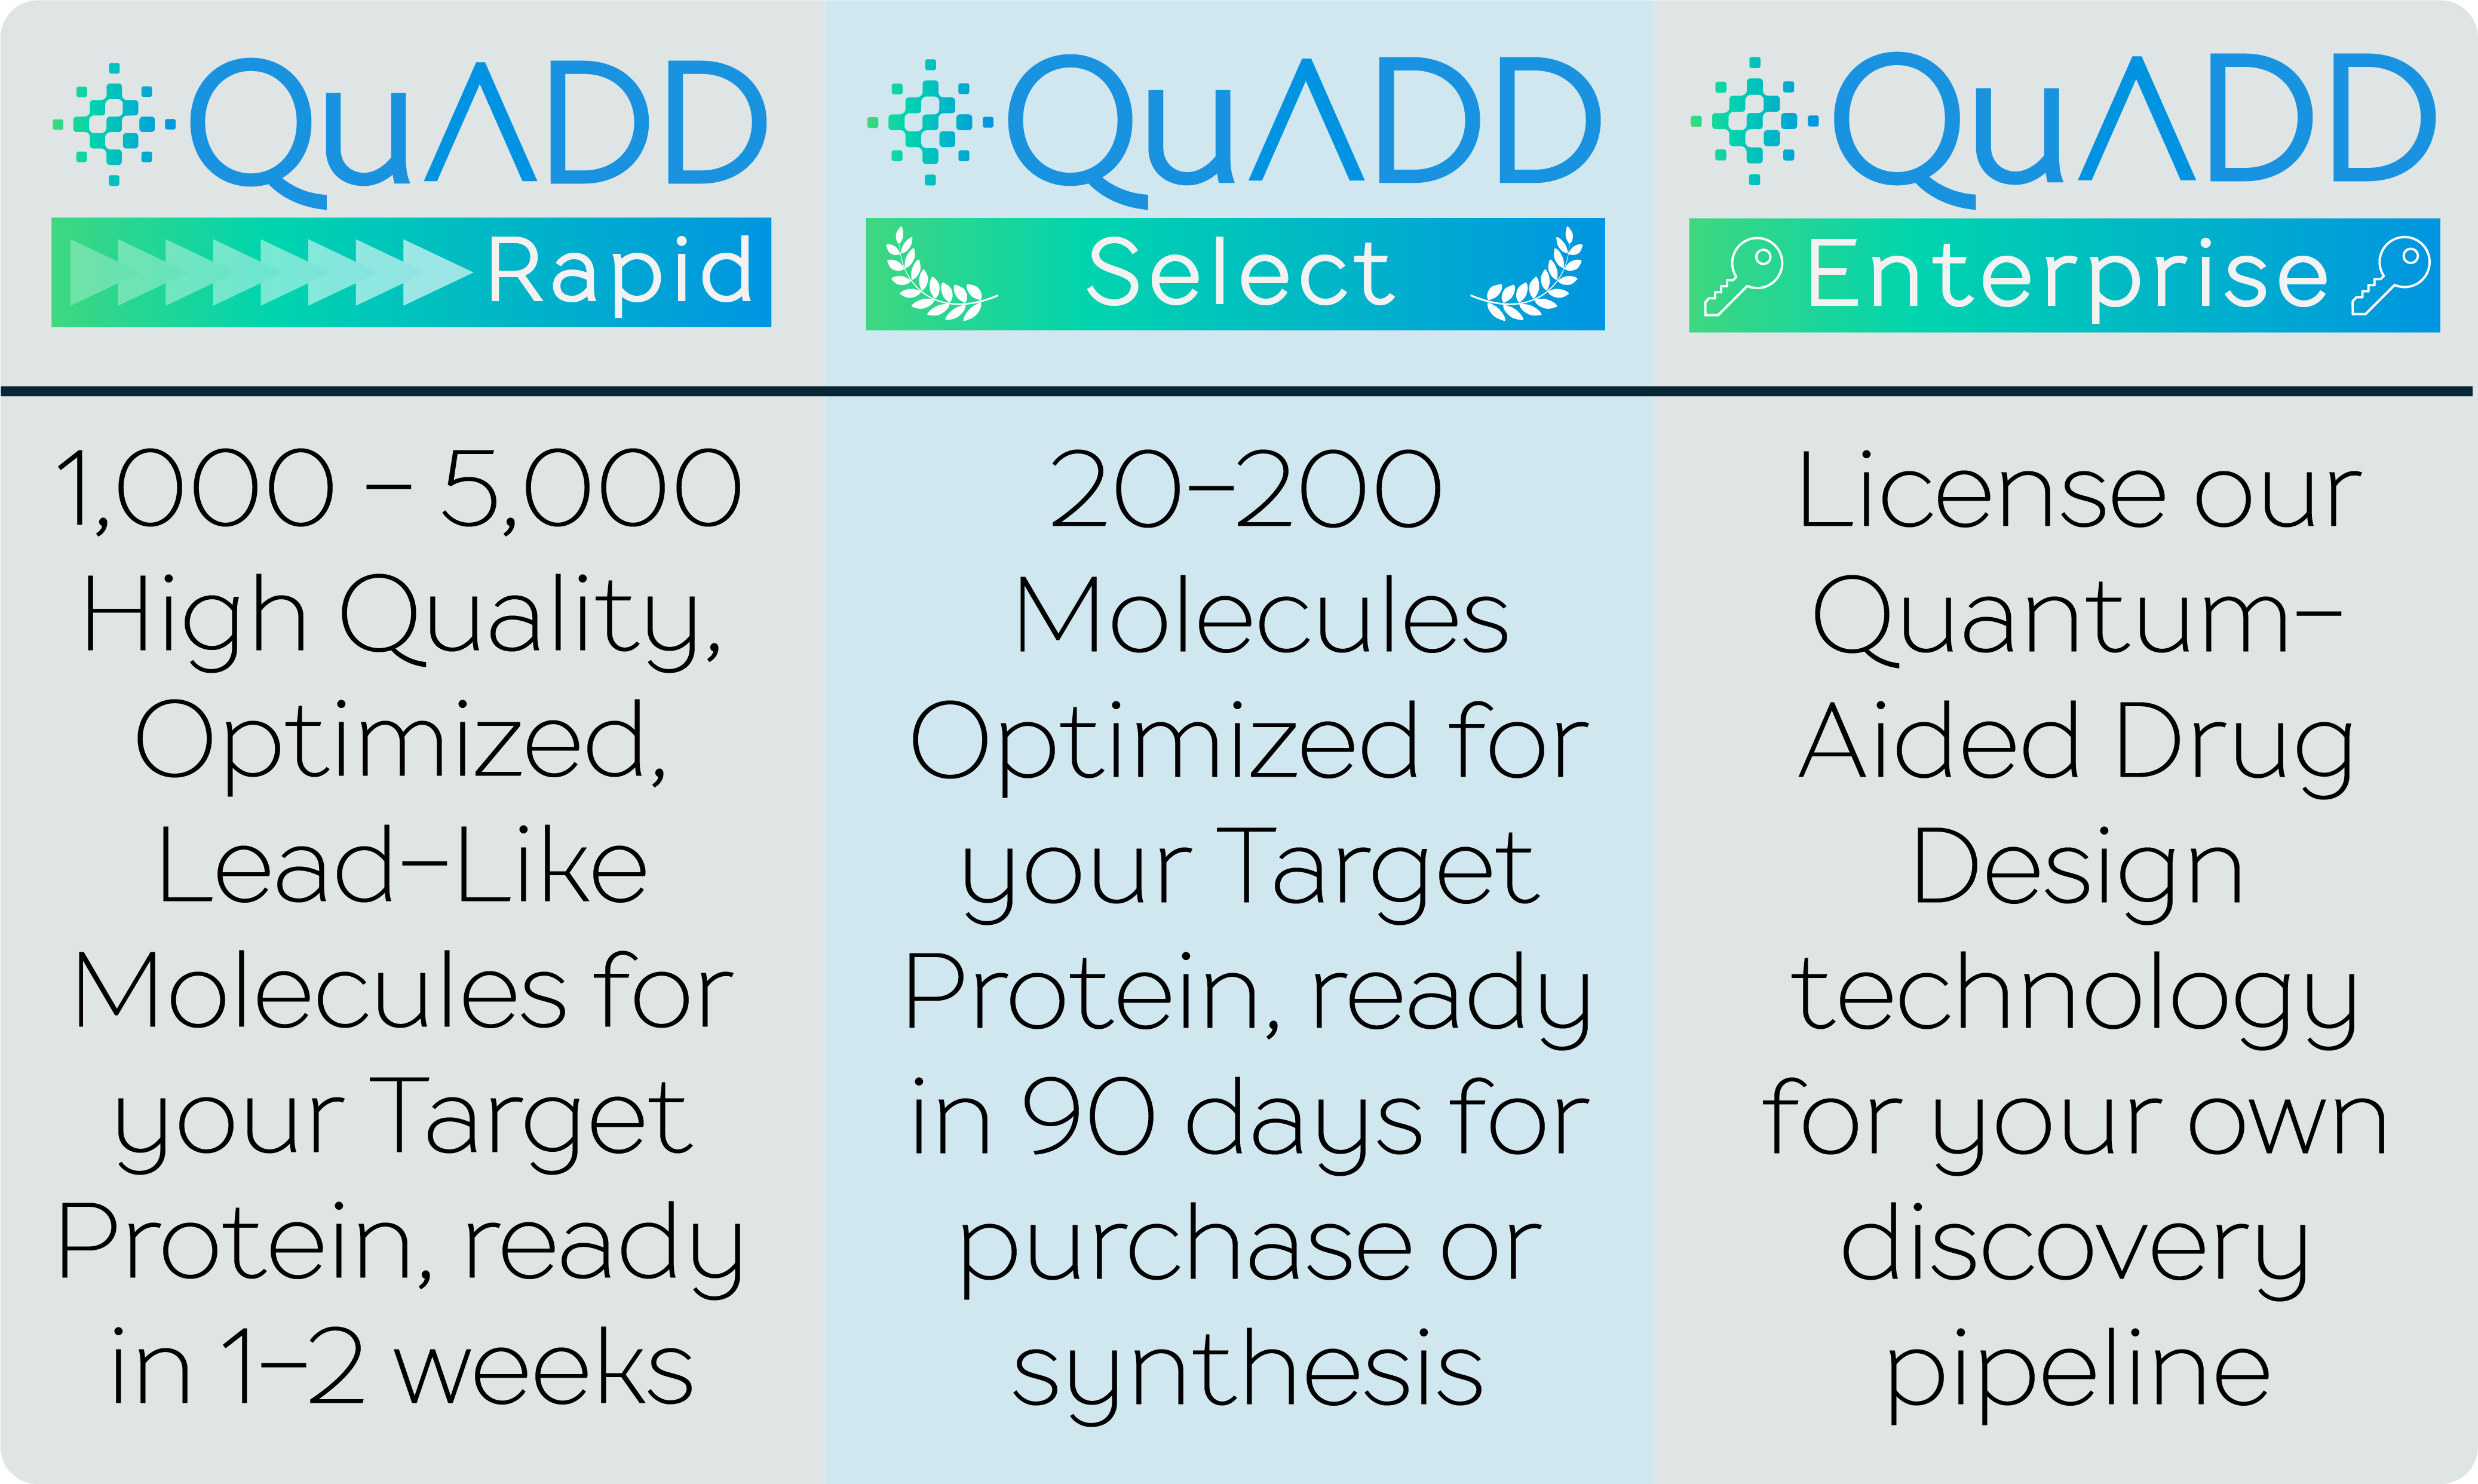 POLARISqb's Quantum-Aided Drug Design Options, including Rapid, Select, and Enterprise